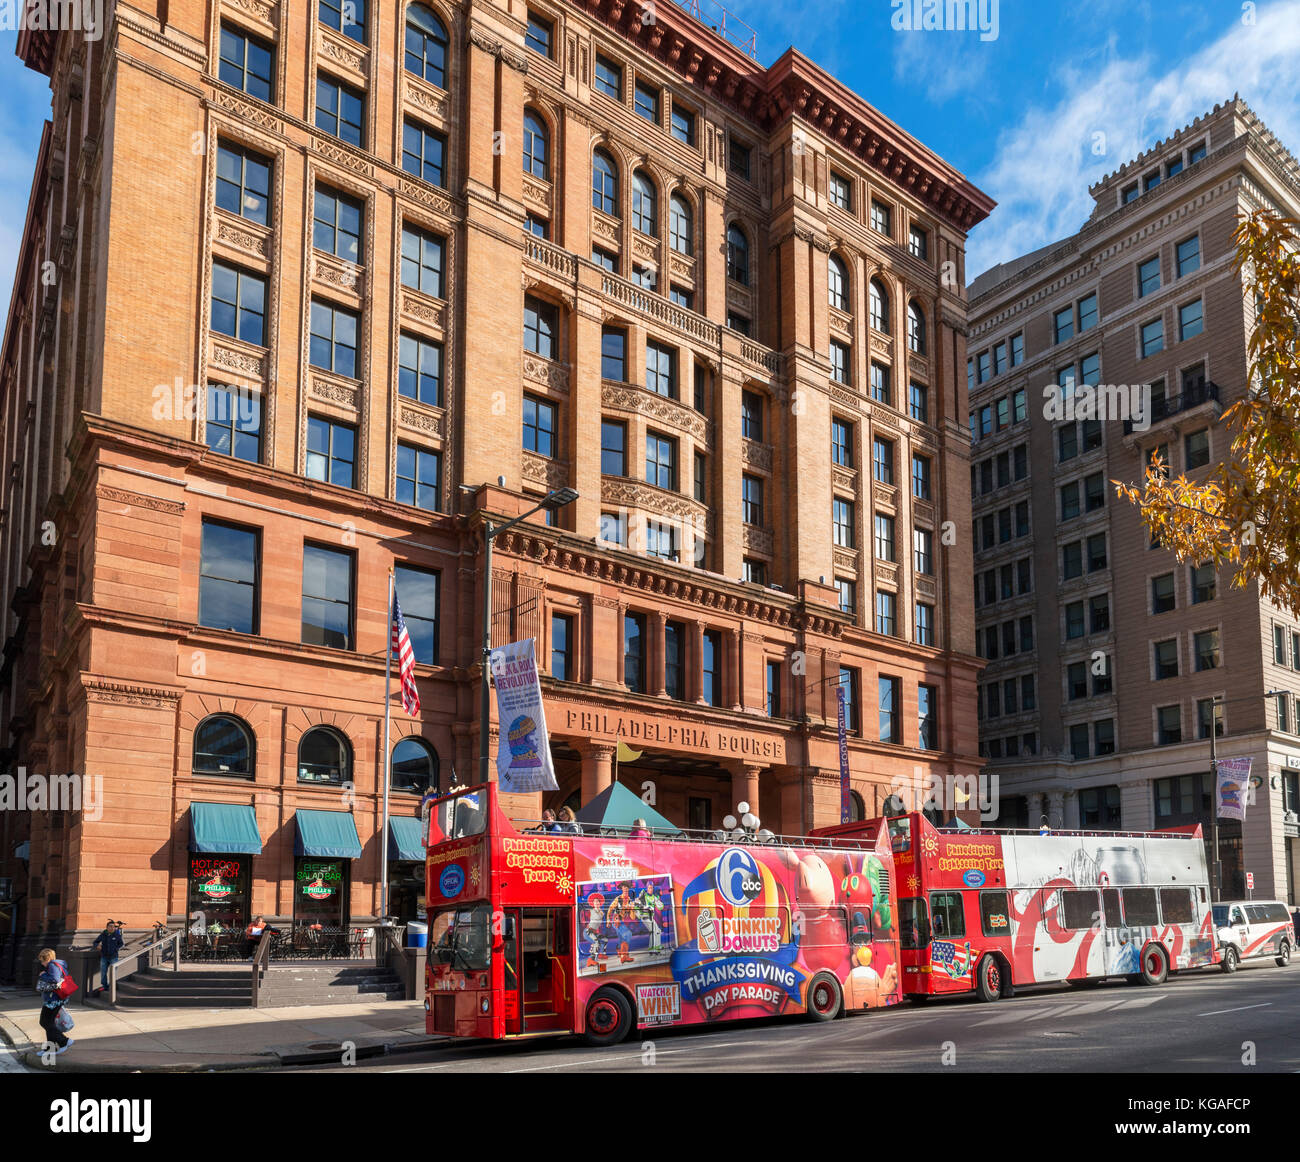 Excursión autobuses estacionados fuera del edificio de la bolsa de Filadelfia, Filadelfia, Pennsylvania, EE.UU. Foto de stock